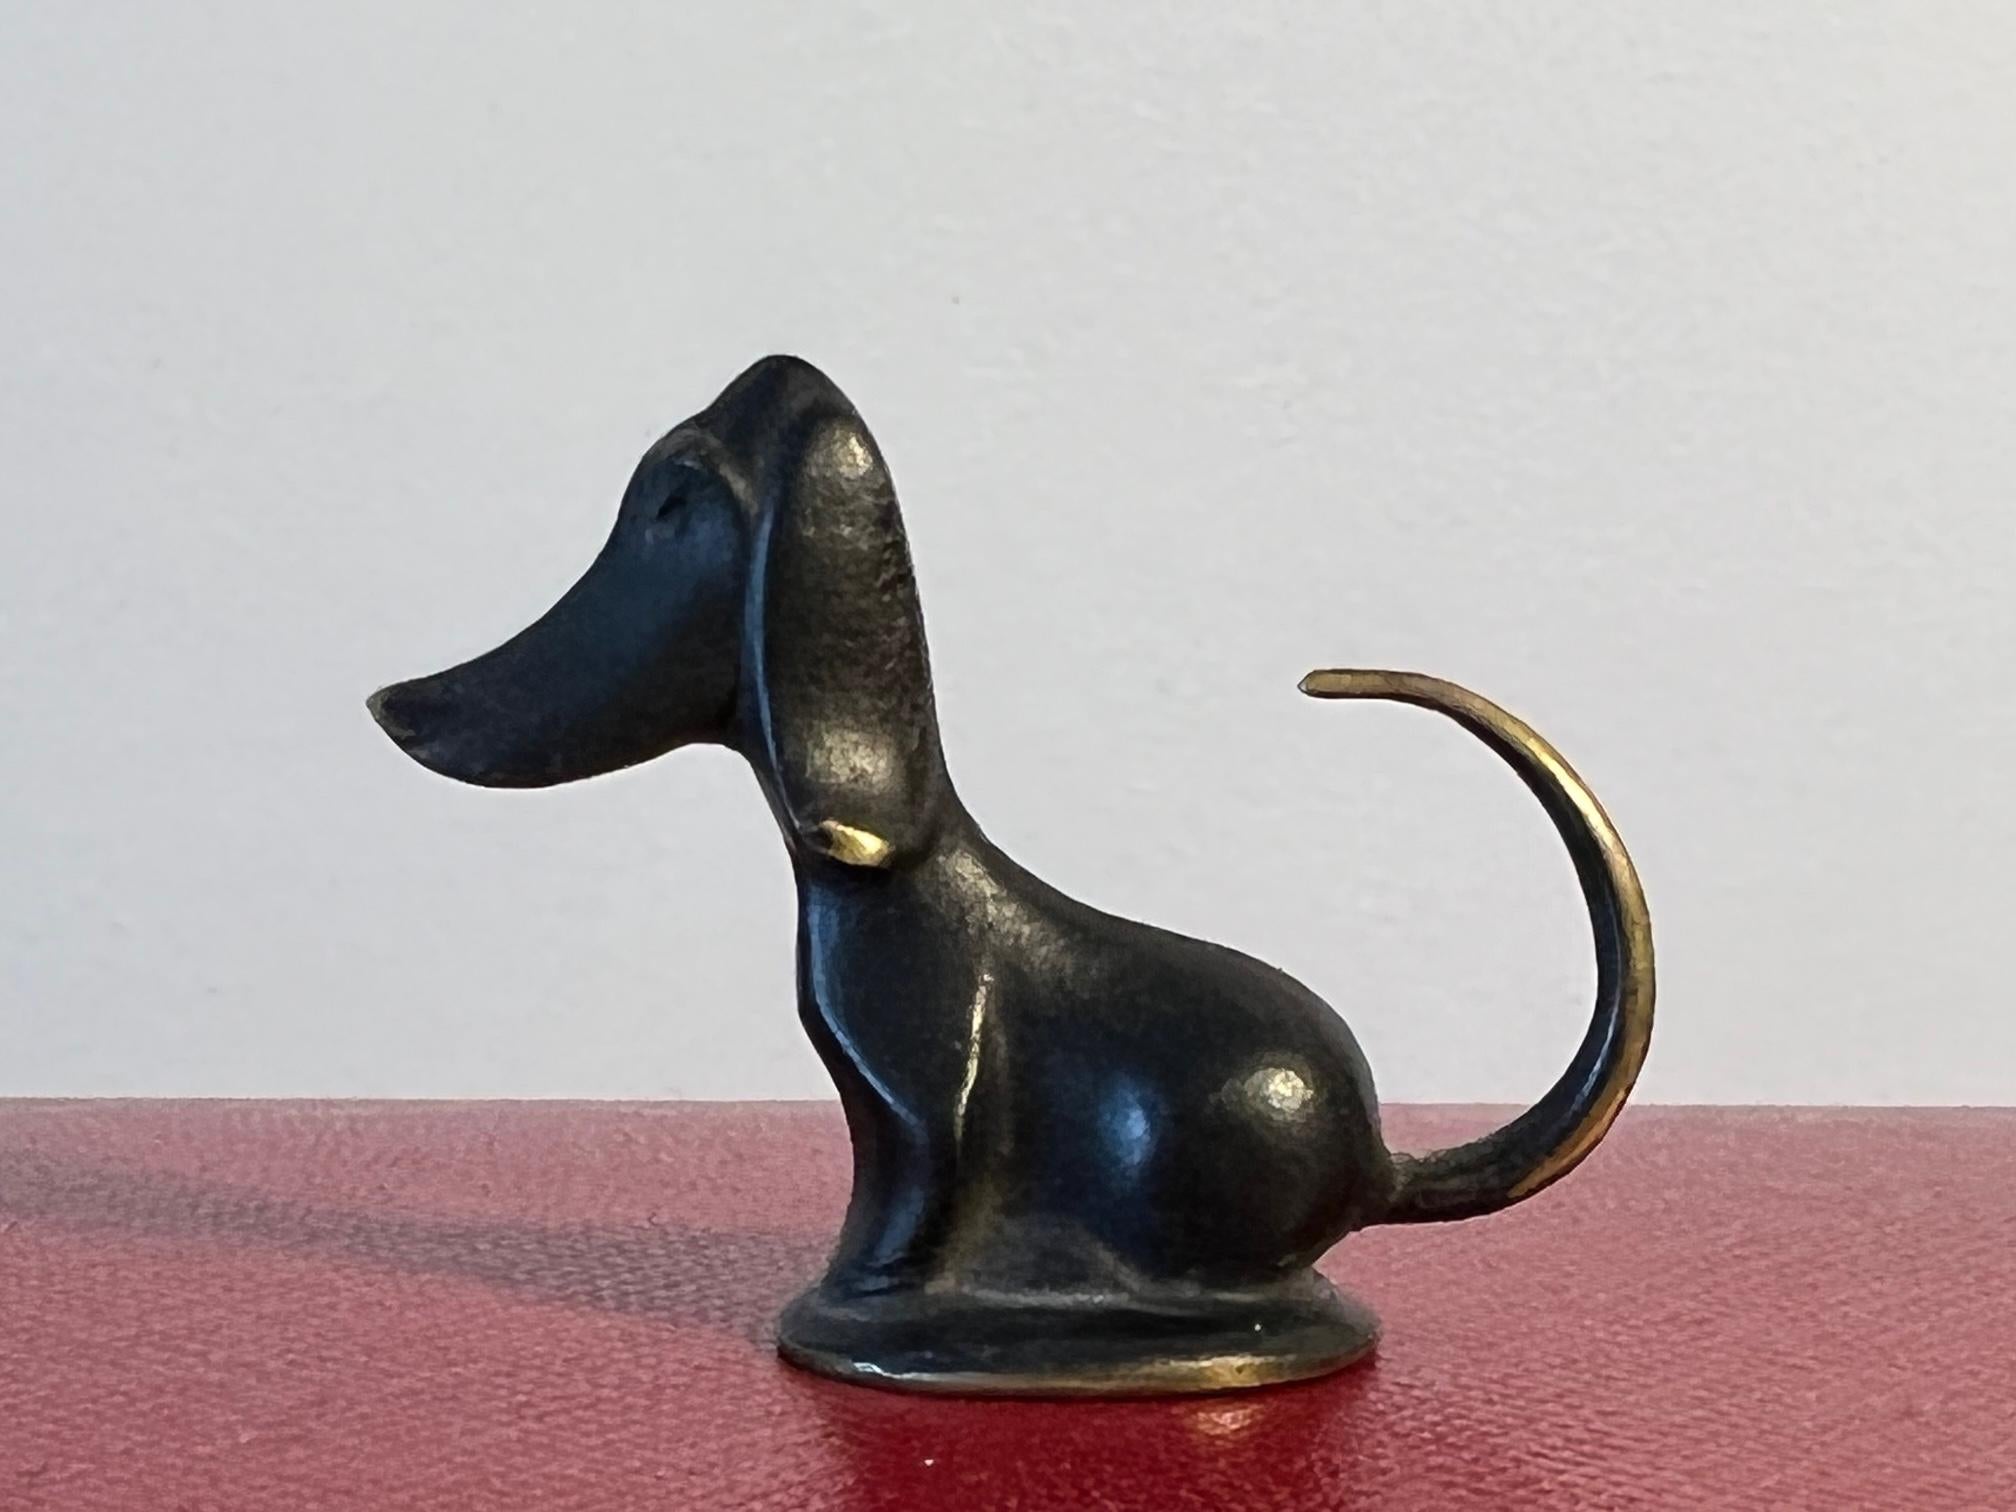 Ein stilvoller und stilisierter Miniaturdackel von der Werkstatte Haugenauer Wienm, hergestellt in Österreich. Sehr charmant und schön aus Bronzeguss, auf der Unterseite signiert.